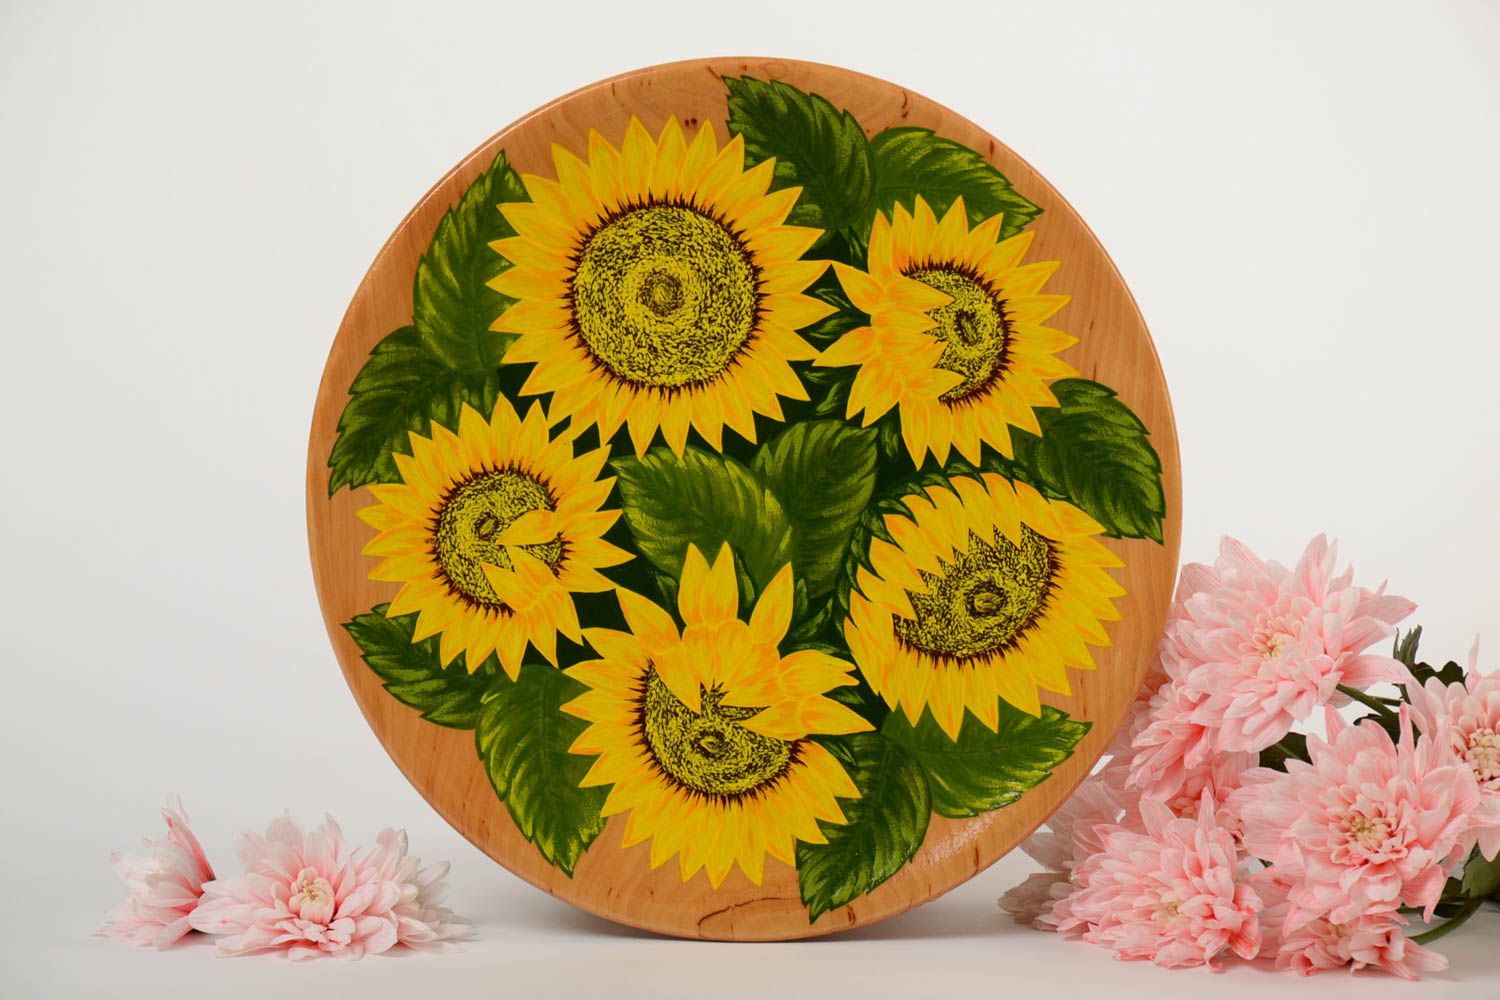 Декоративная тарелка из дерева с подсолнухами светлая расписная ручной работы фото 1